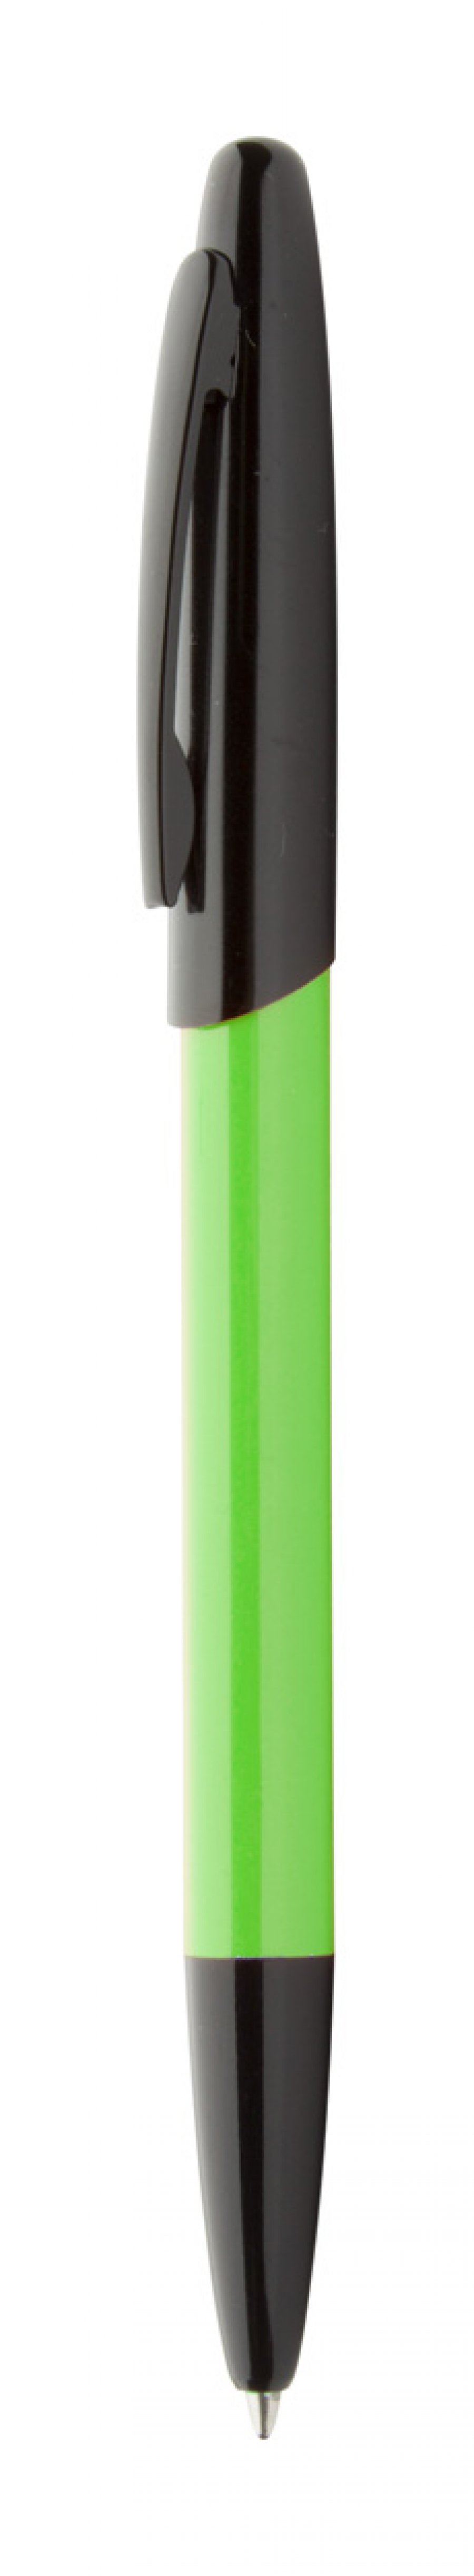 "Kiwi" kuličkové pero, limetková zelená